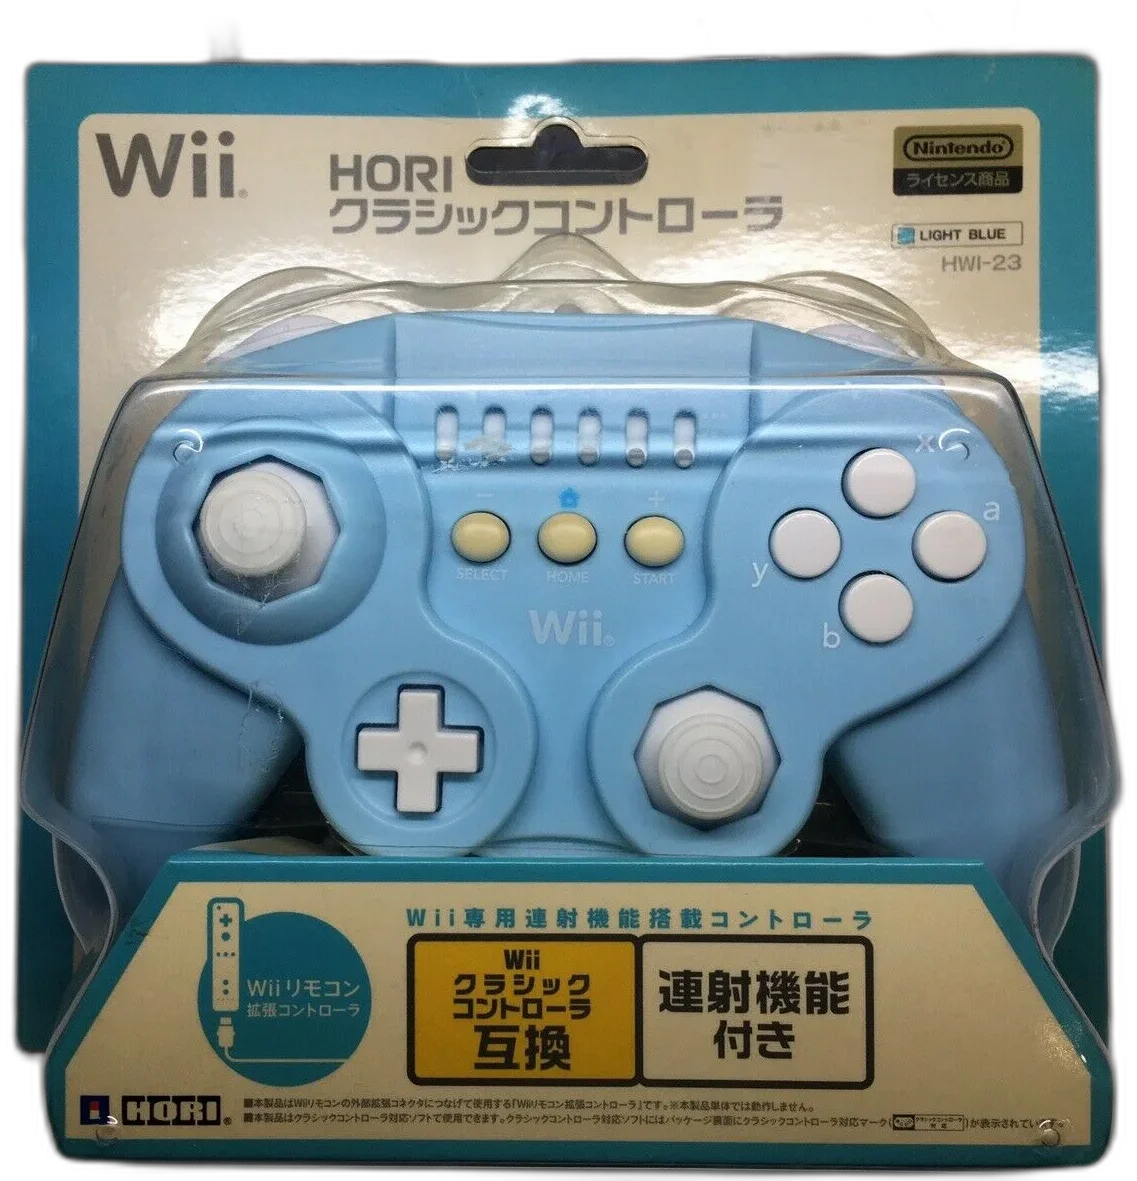  HORI Wii Classic Controller (Blue)